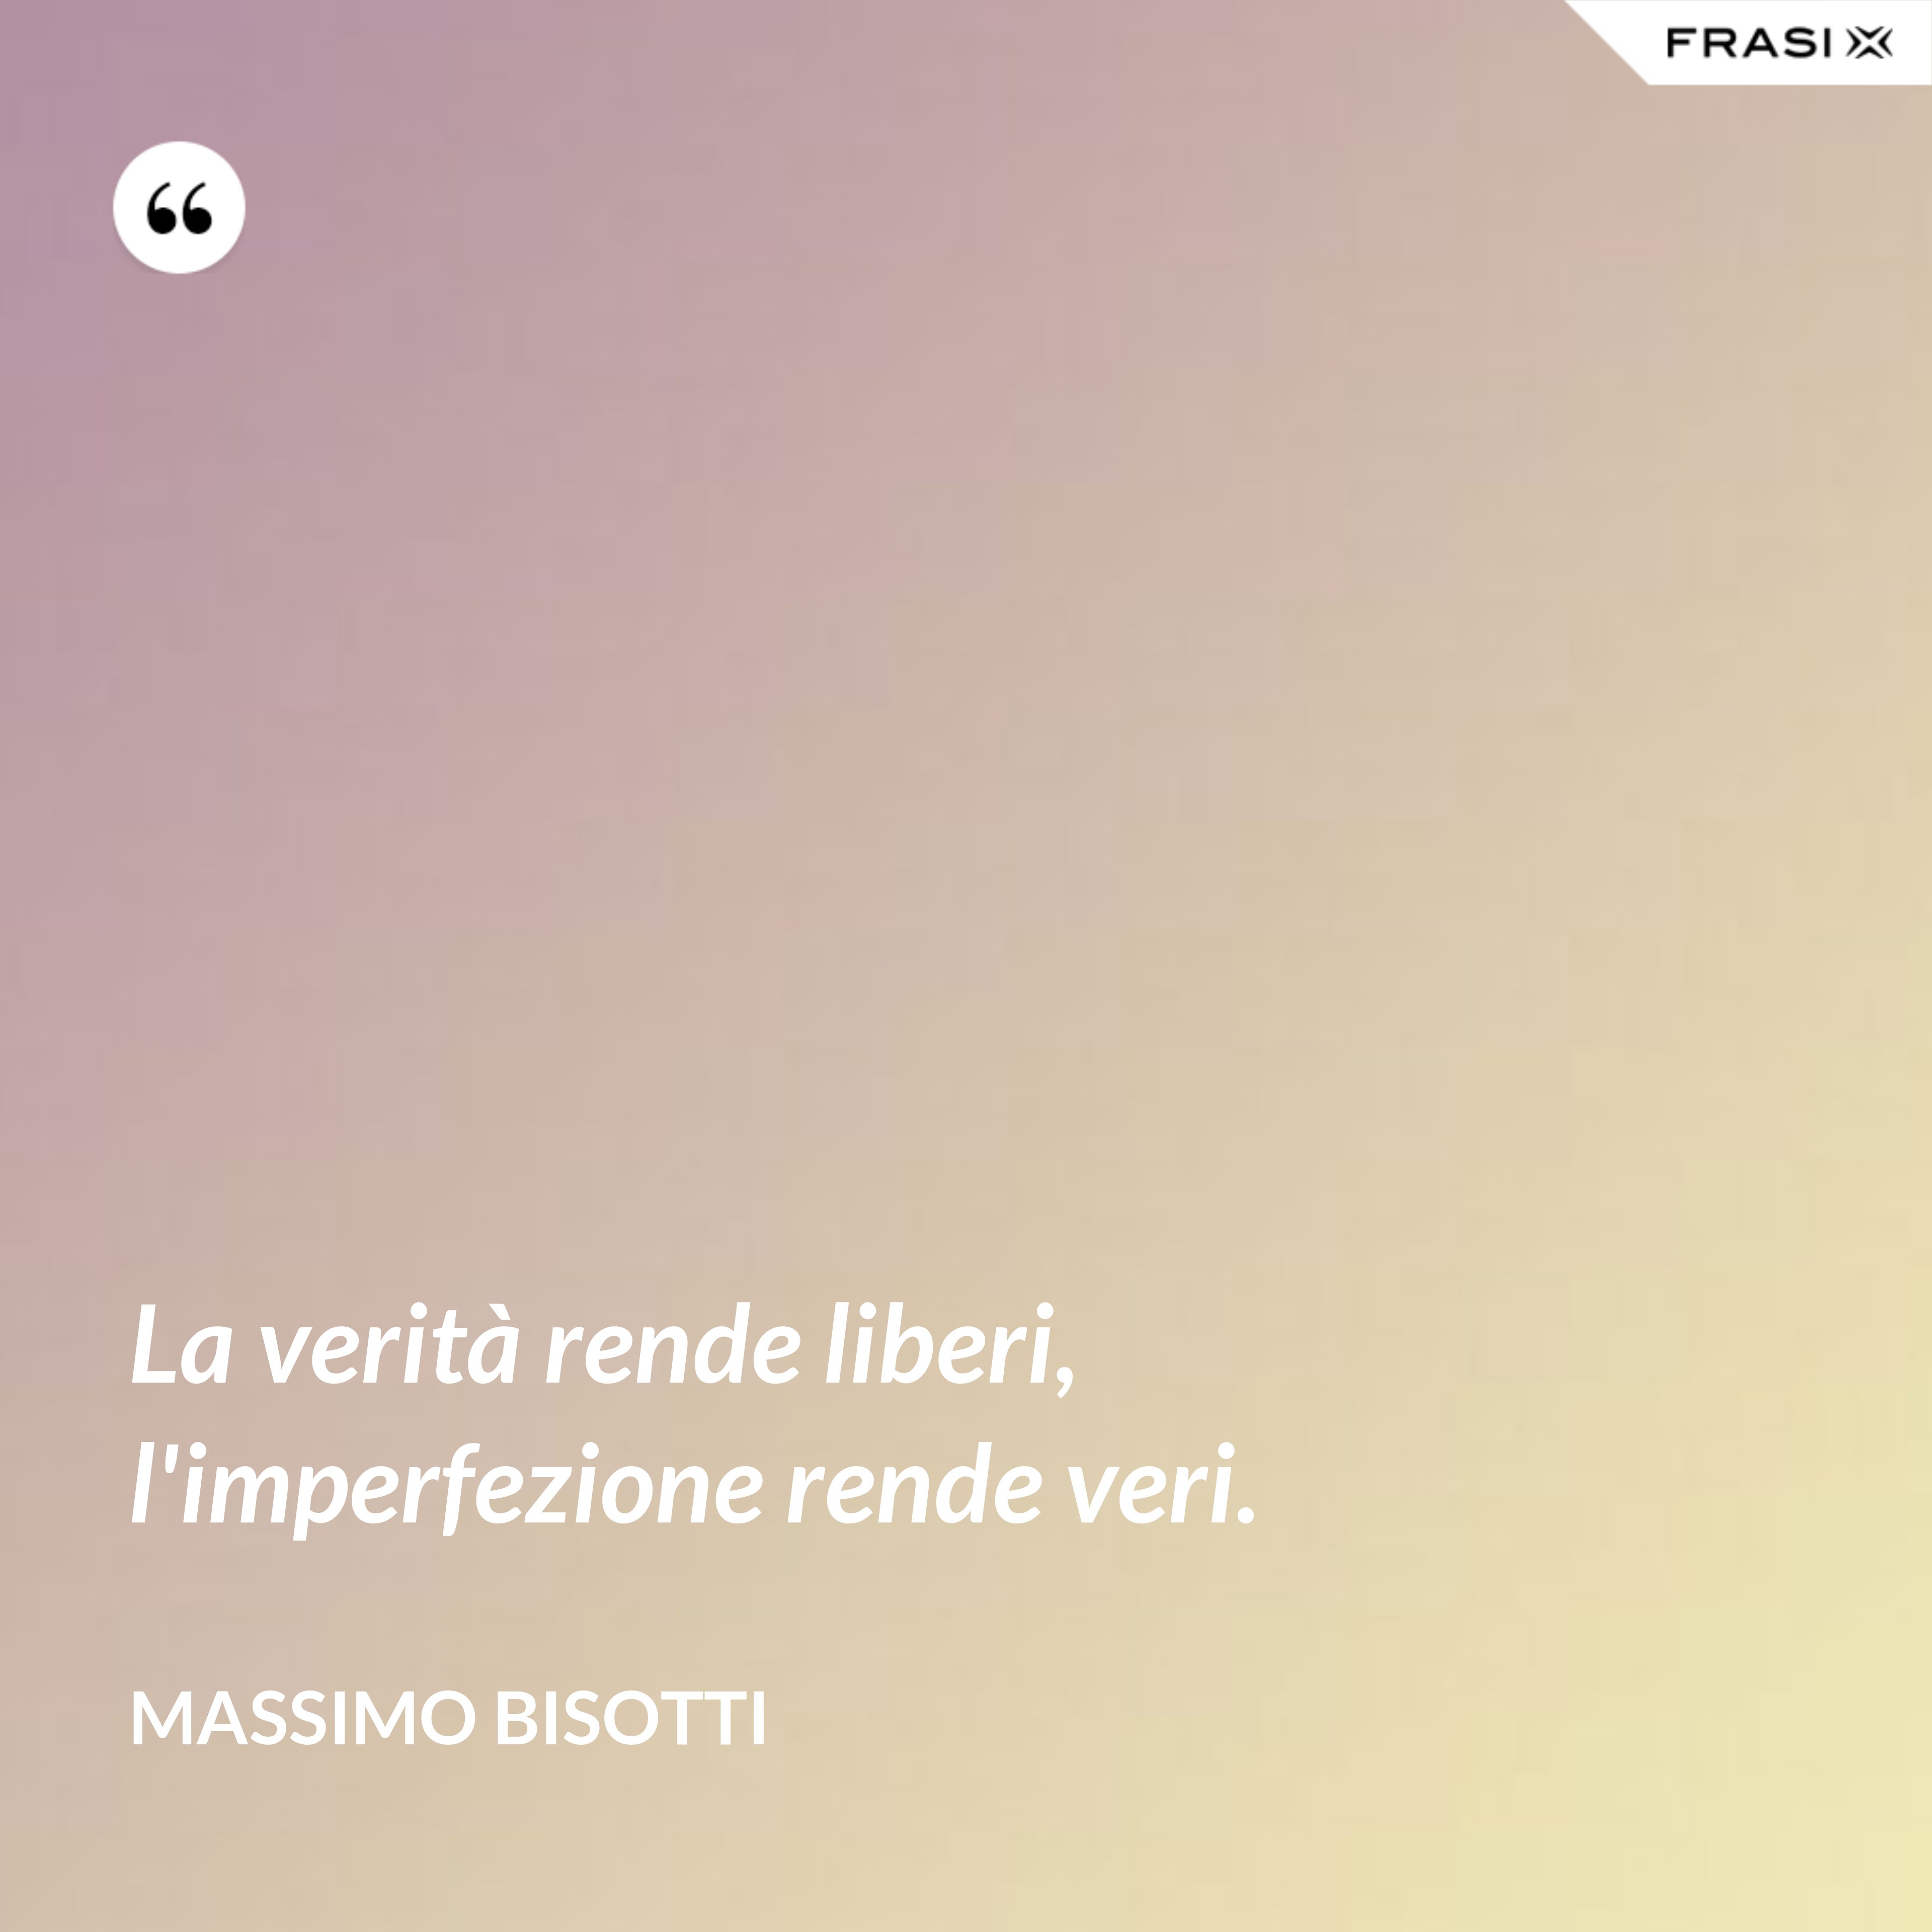 La verità rende liberi, l'imperfezione rende veri. - Massimo Bisotti